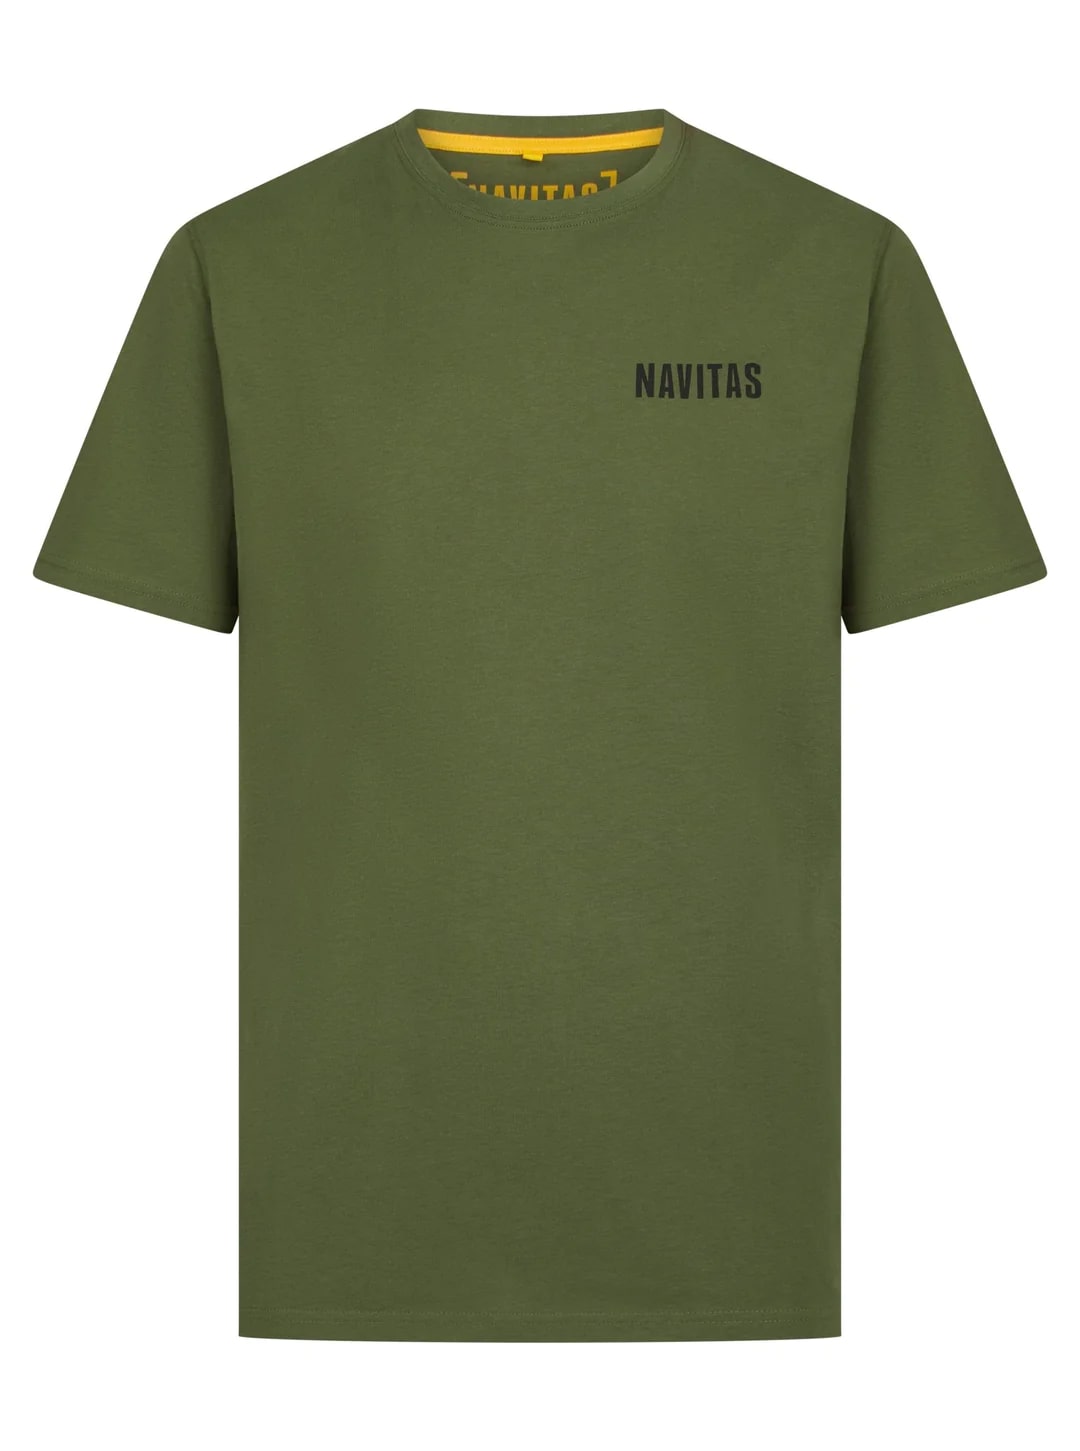 Navitas Diving T Shirt